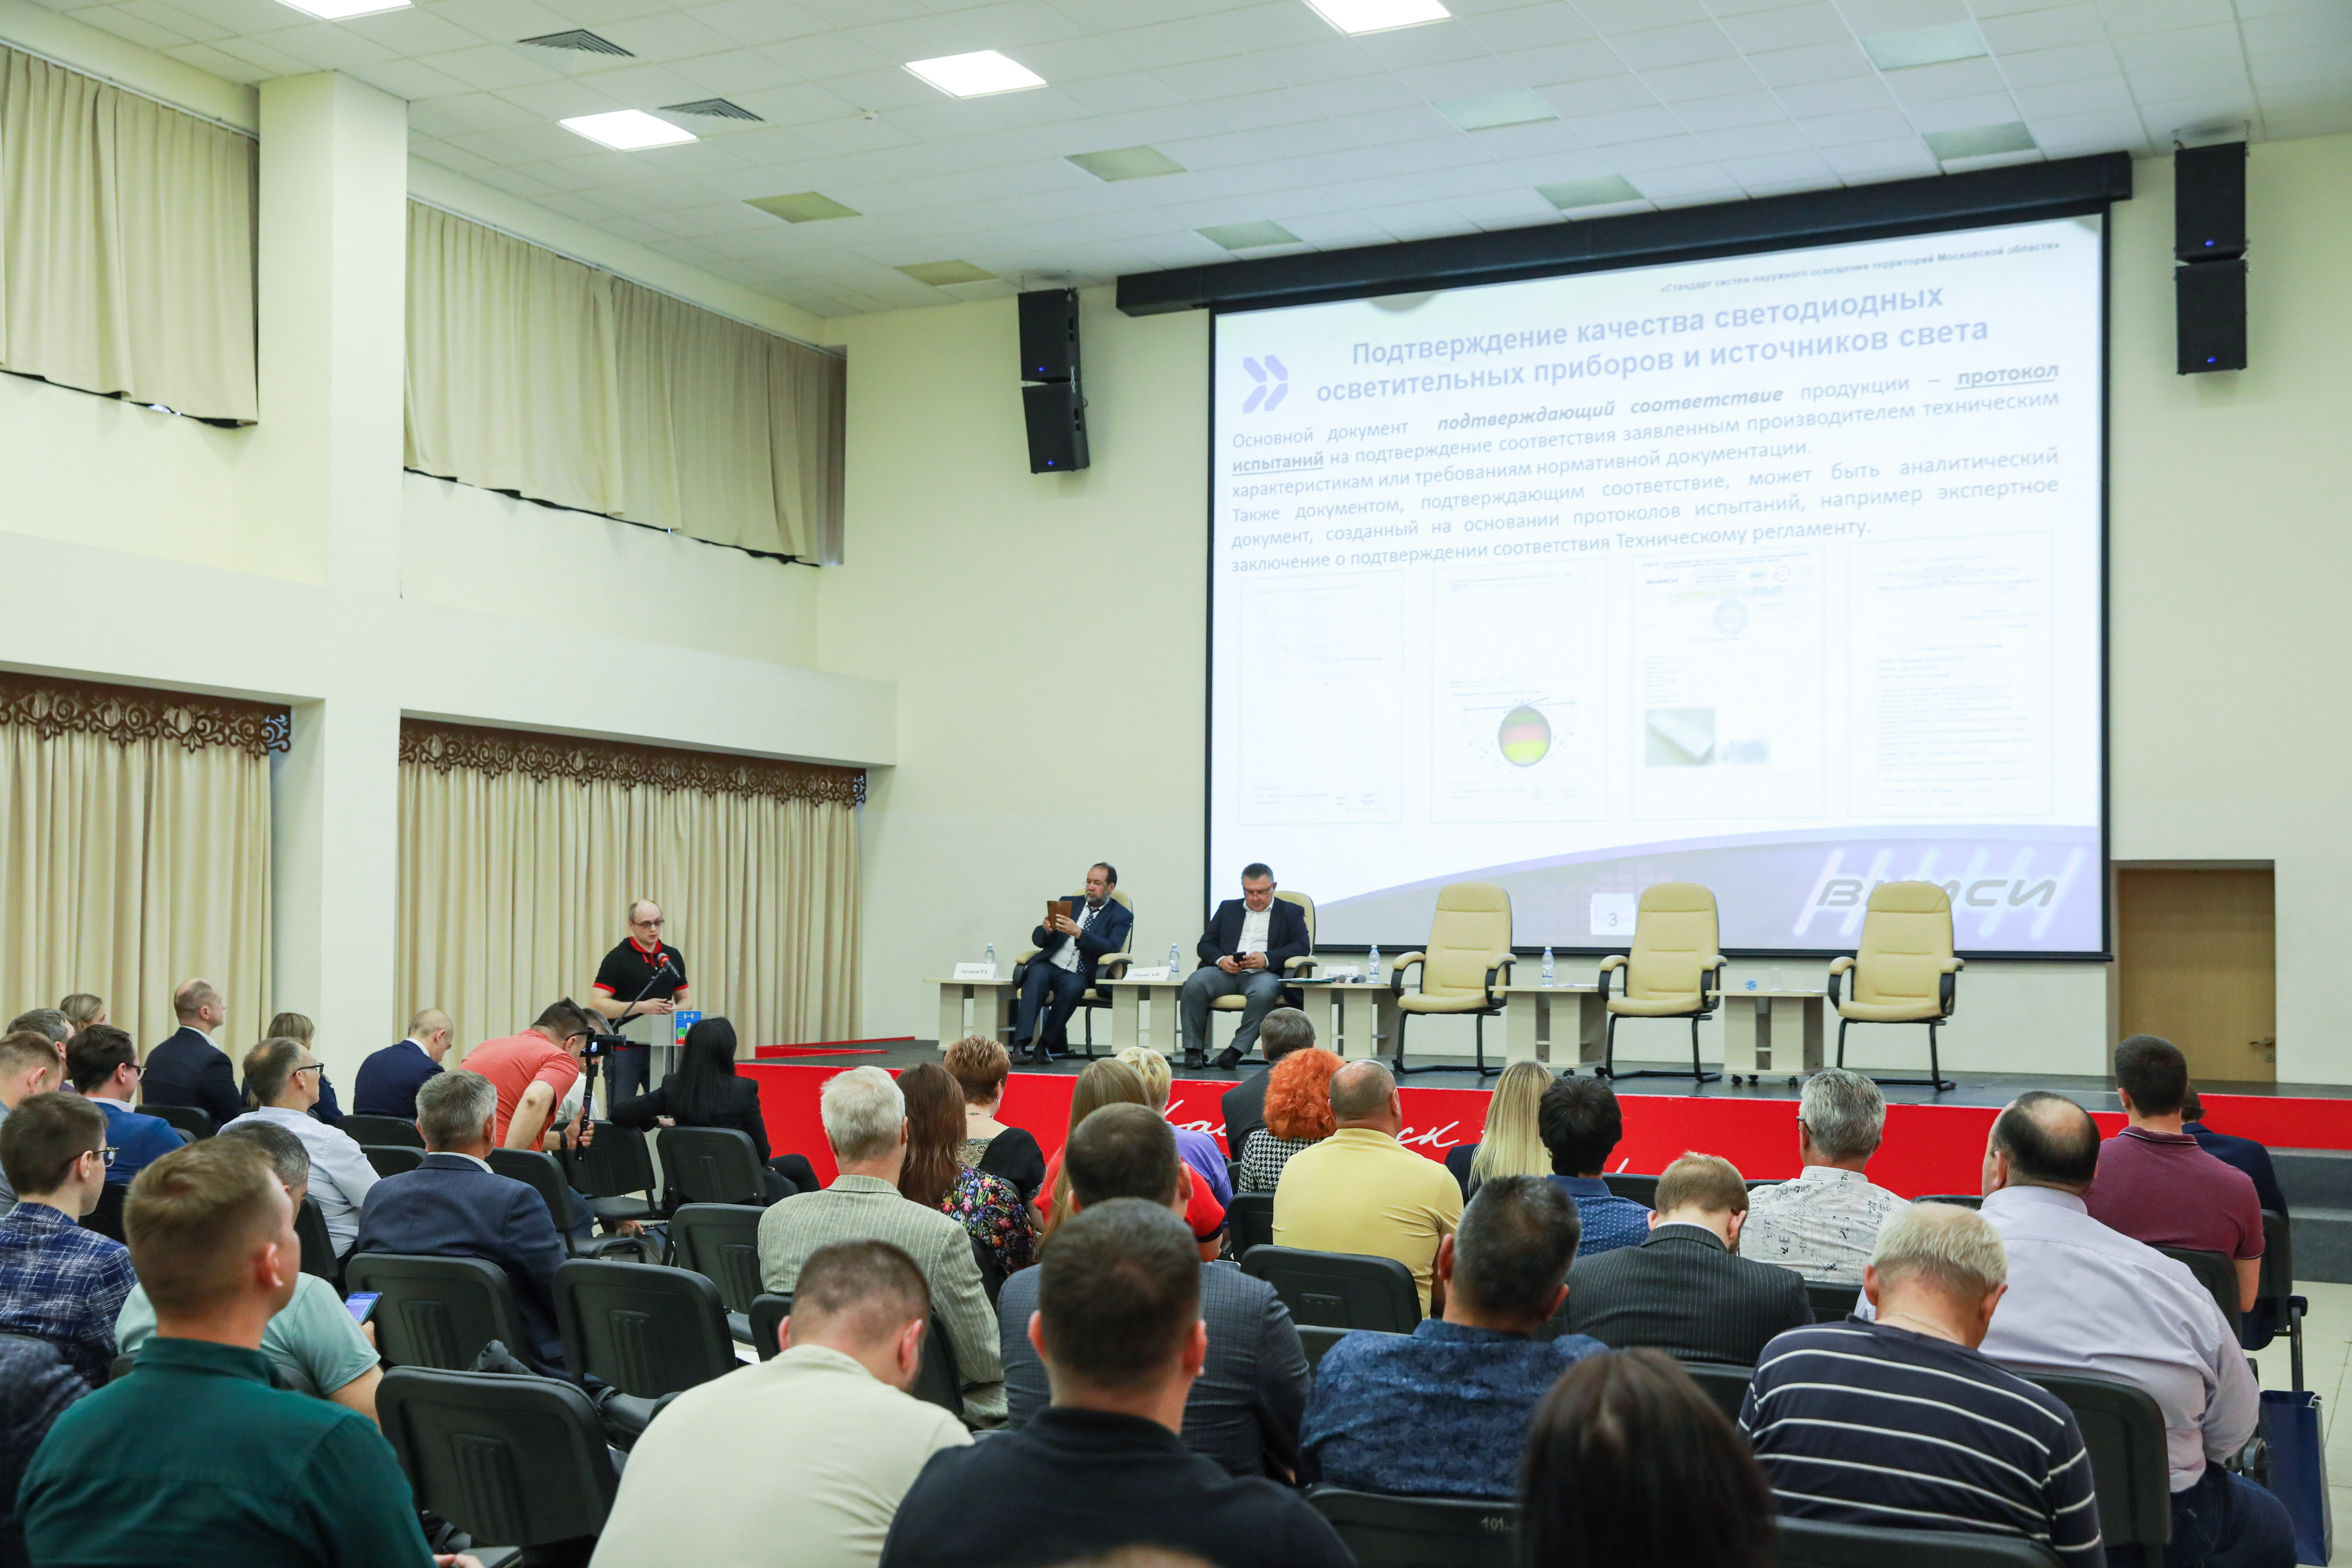 ВНИСИ выступил на семинаре «Стандарт систем наружного освещения территорий Московской области»